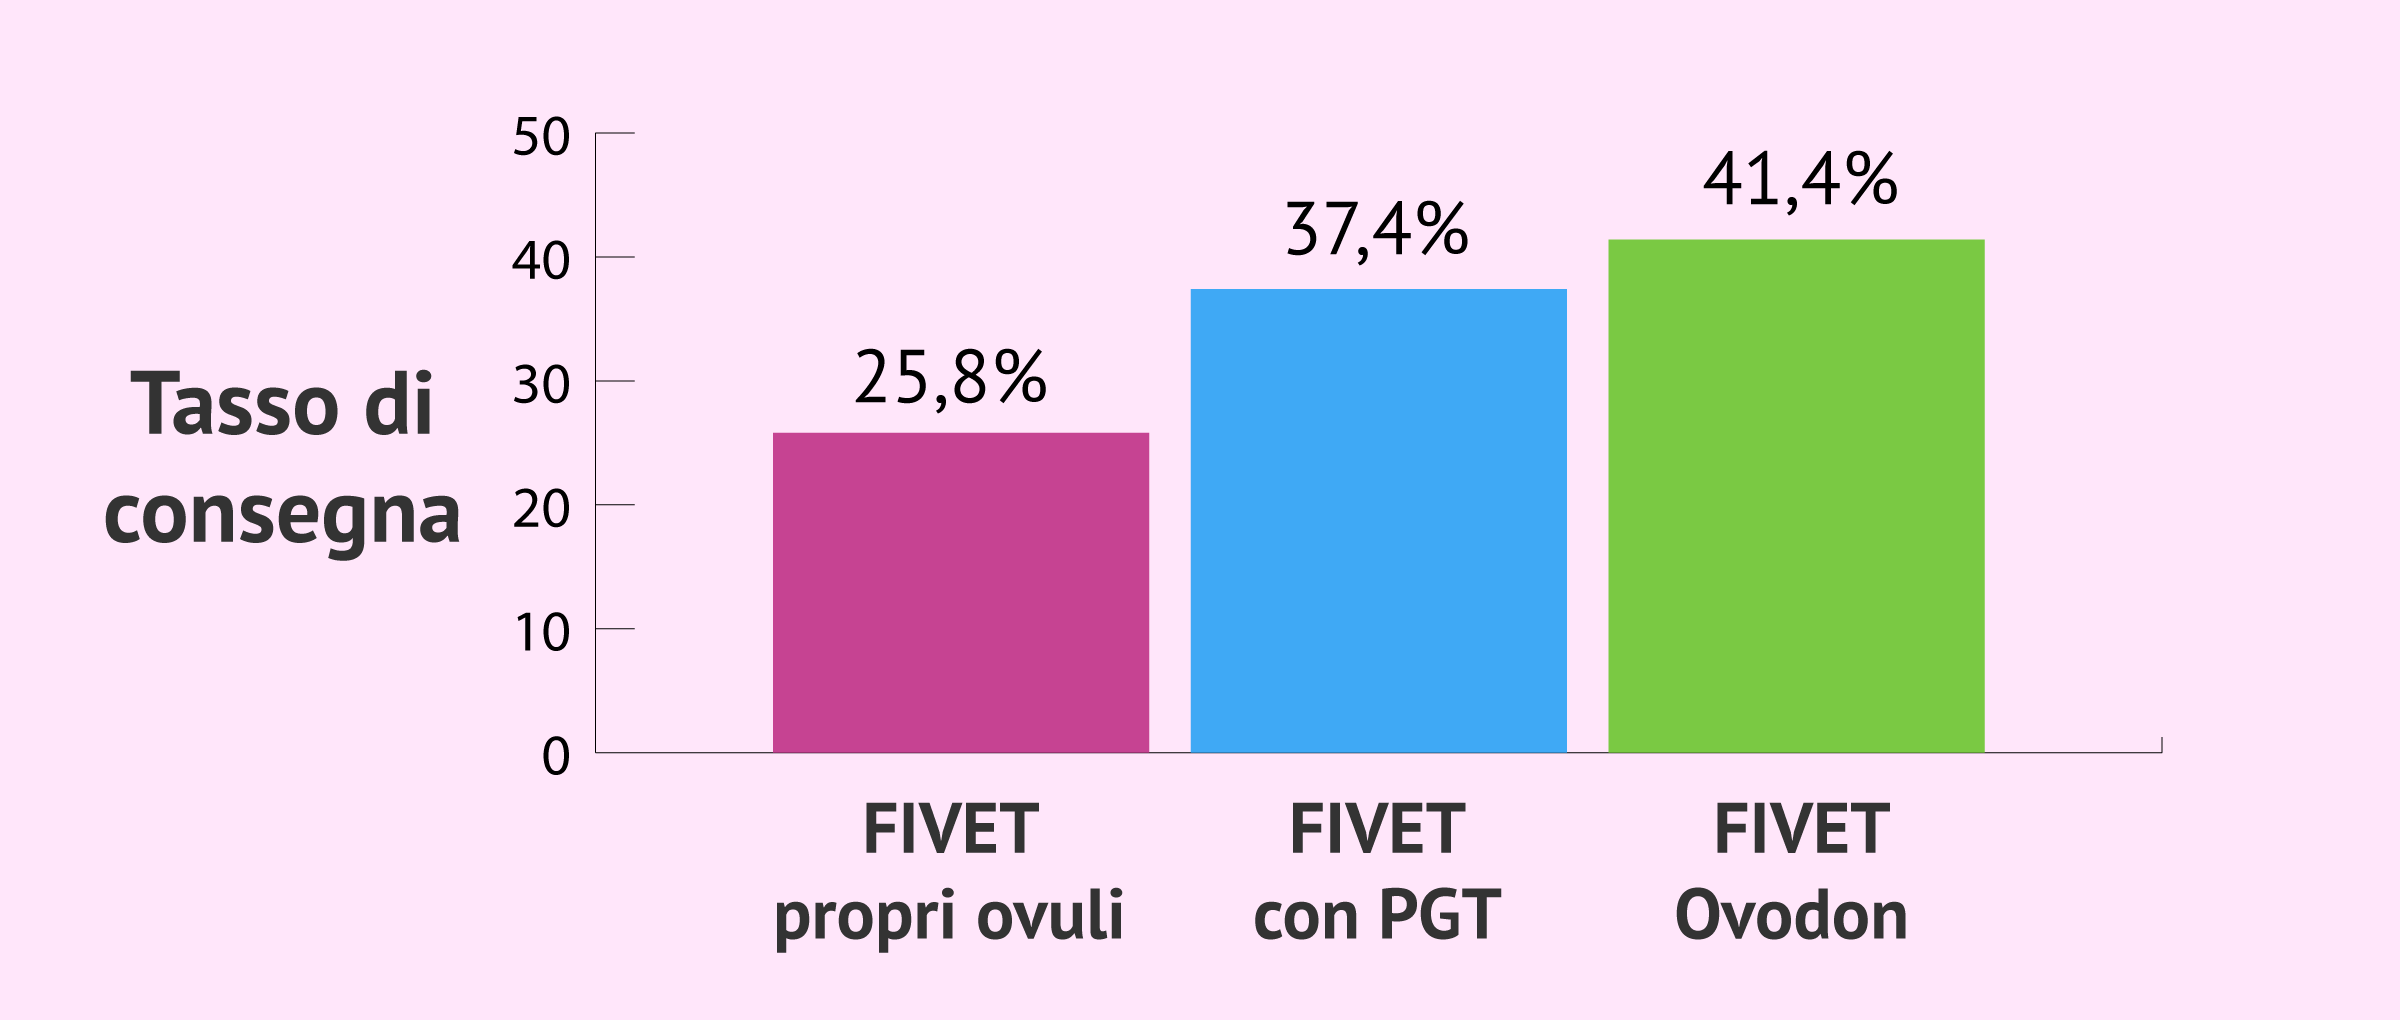 Altre modalità di FIVET e le loro percentuali di successo